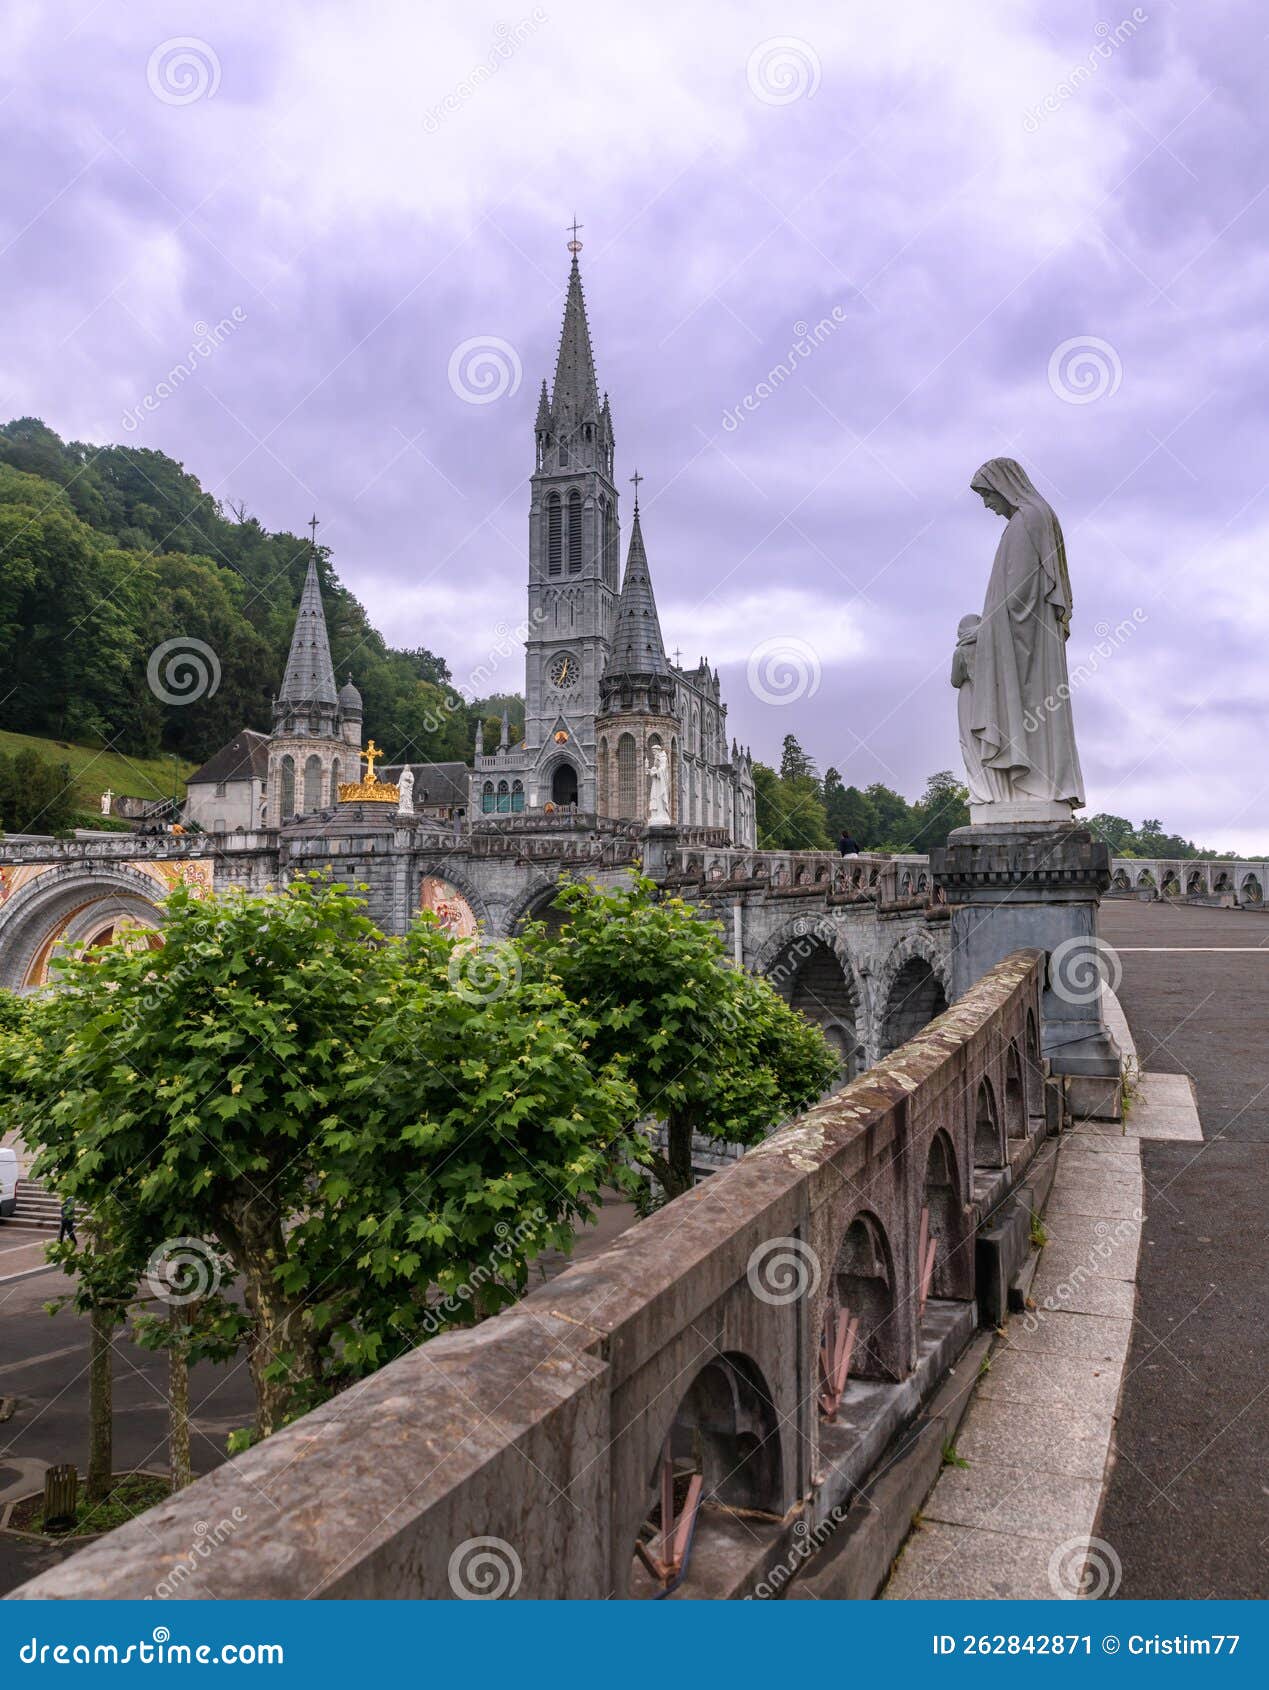 Sanctuaire De Notre-Dame De Lourdes, the Sanctuary of Our Lady of ...